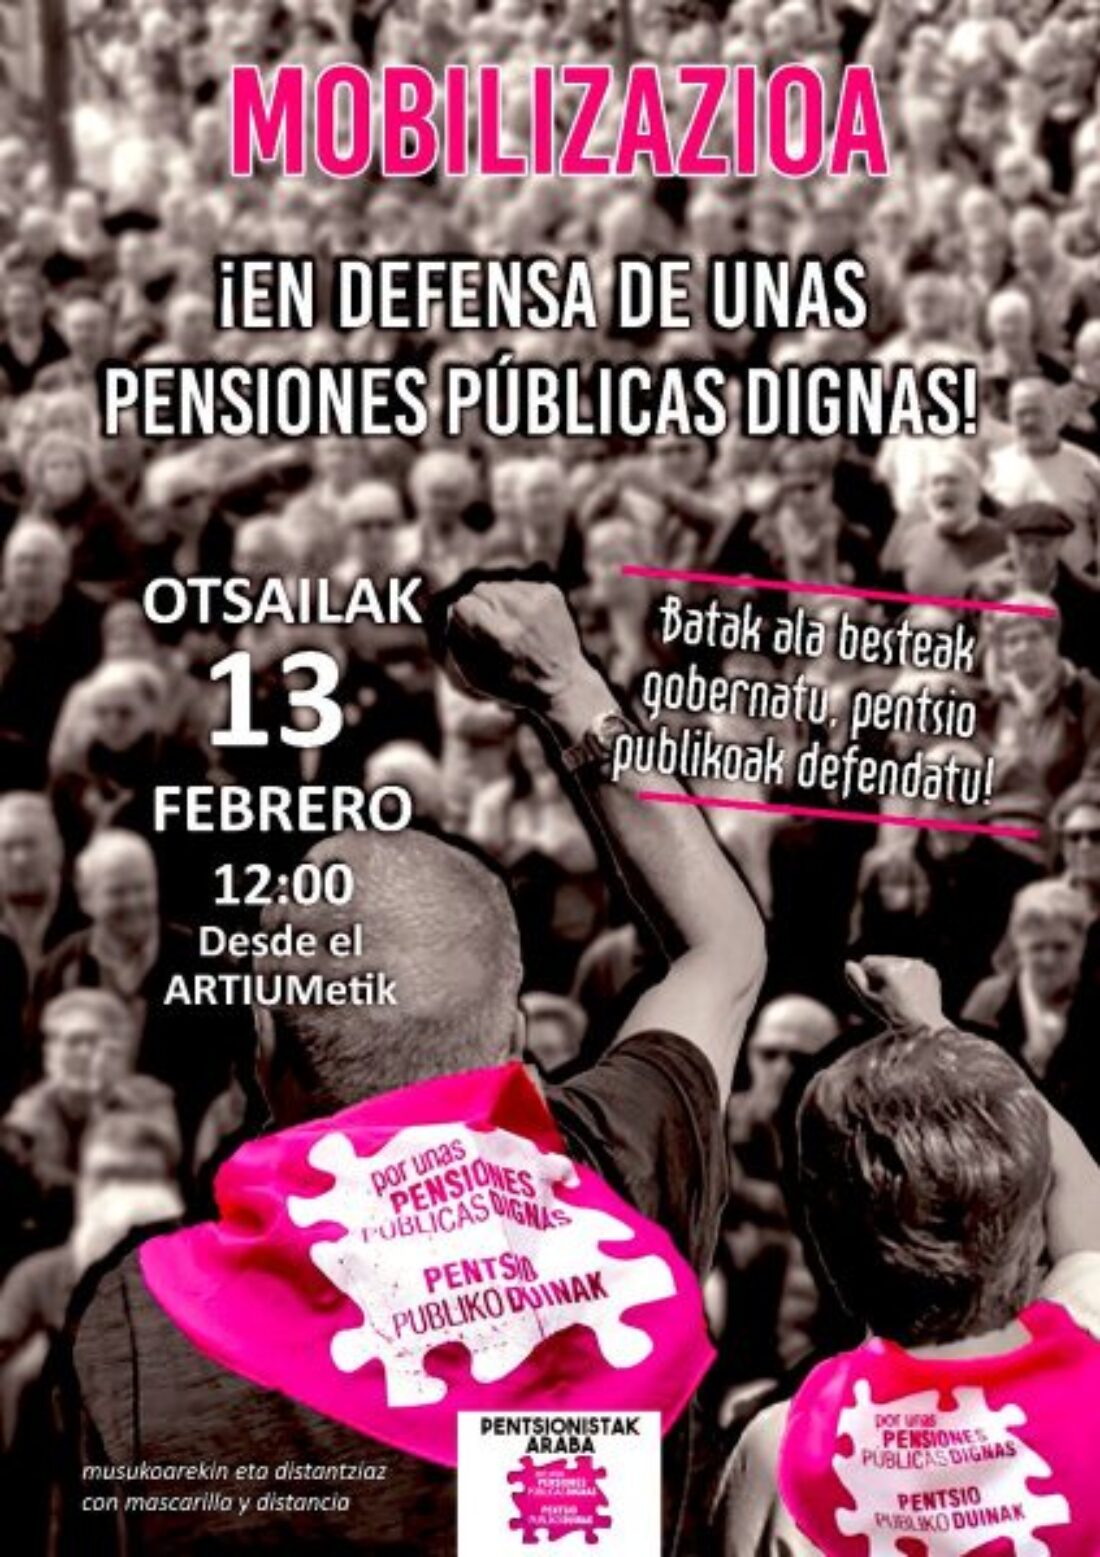 CGT-LKN hace un llamamiento a participar en las manifestaciones del 13 de febrero contra la privatización de las pensiones